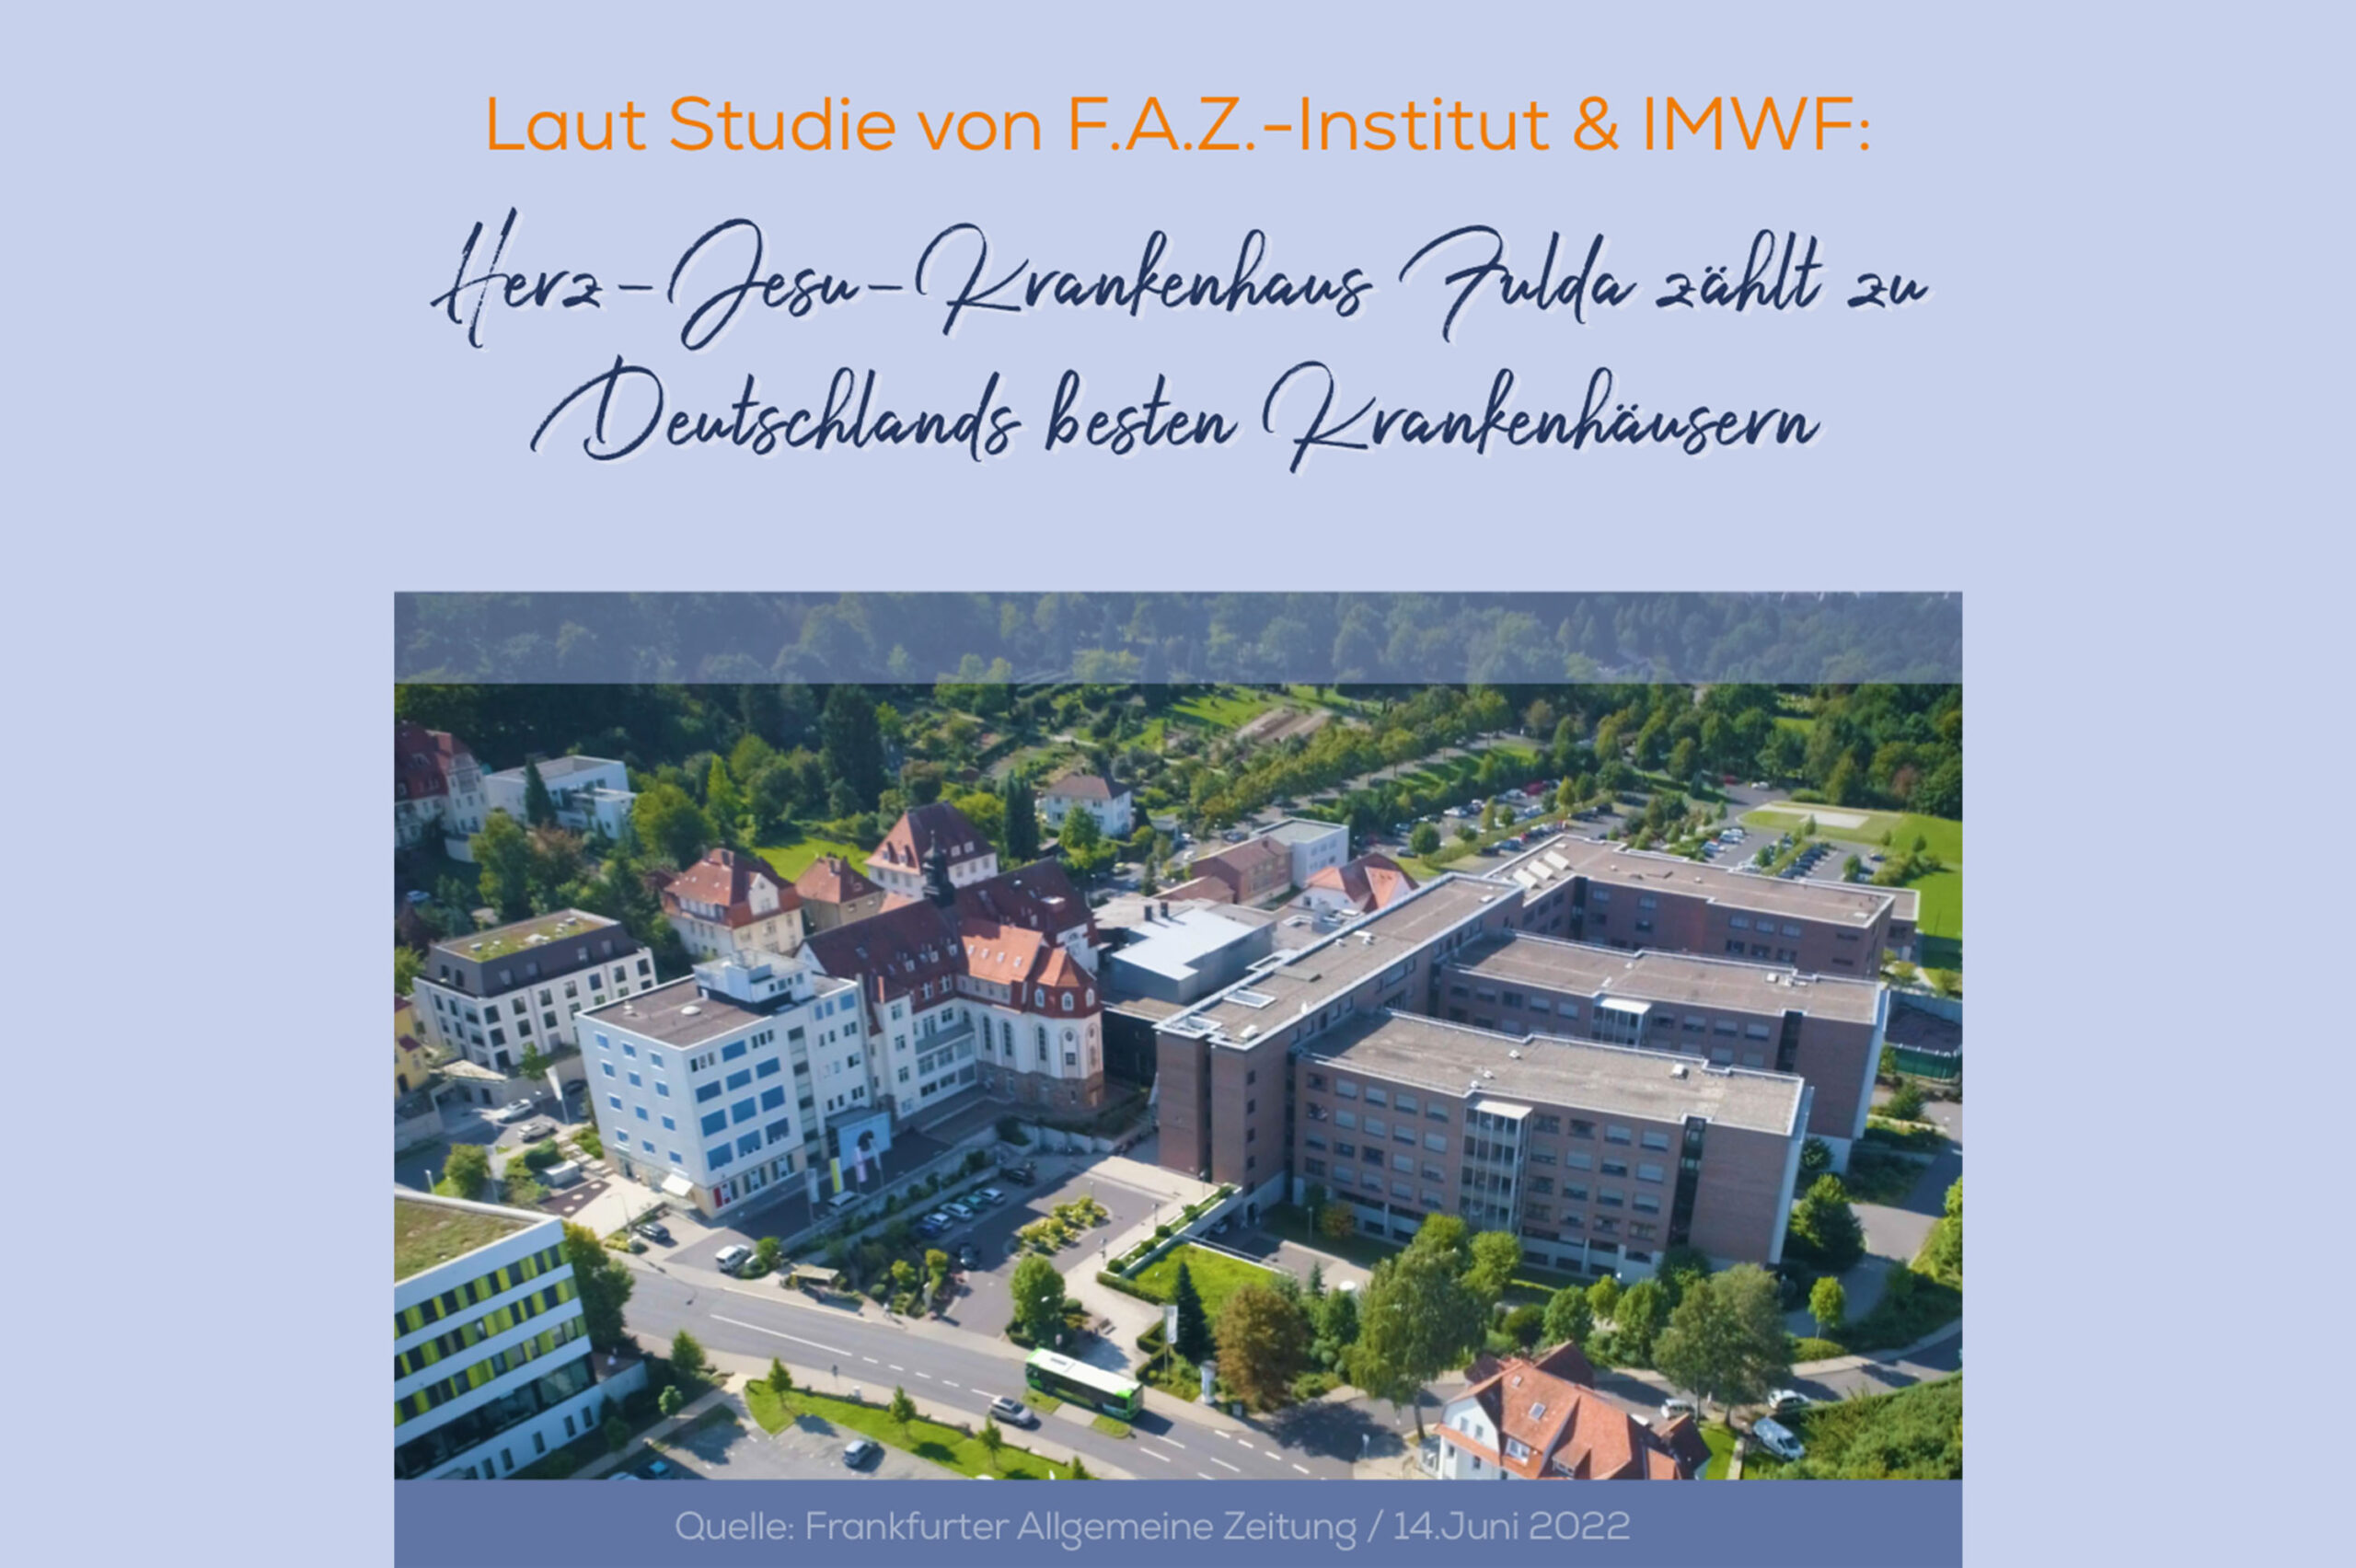 Herz-Jesu-Krankenhaus Fulda erneut unter „Deutschlands besten Krankenhäusern“  - bestätigt durch Studie des F.A.Z.-Instituts